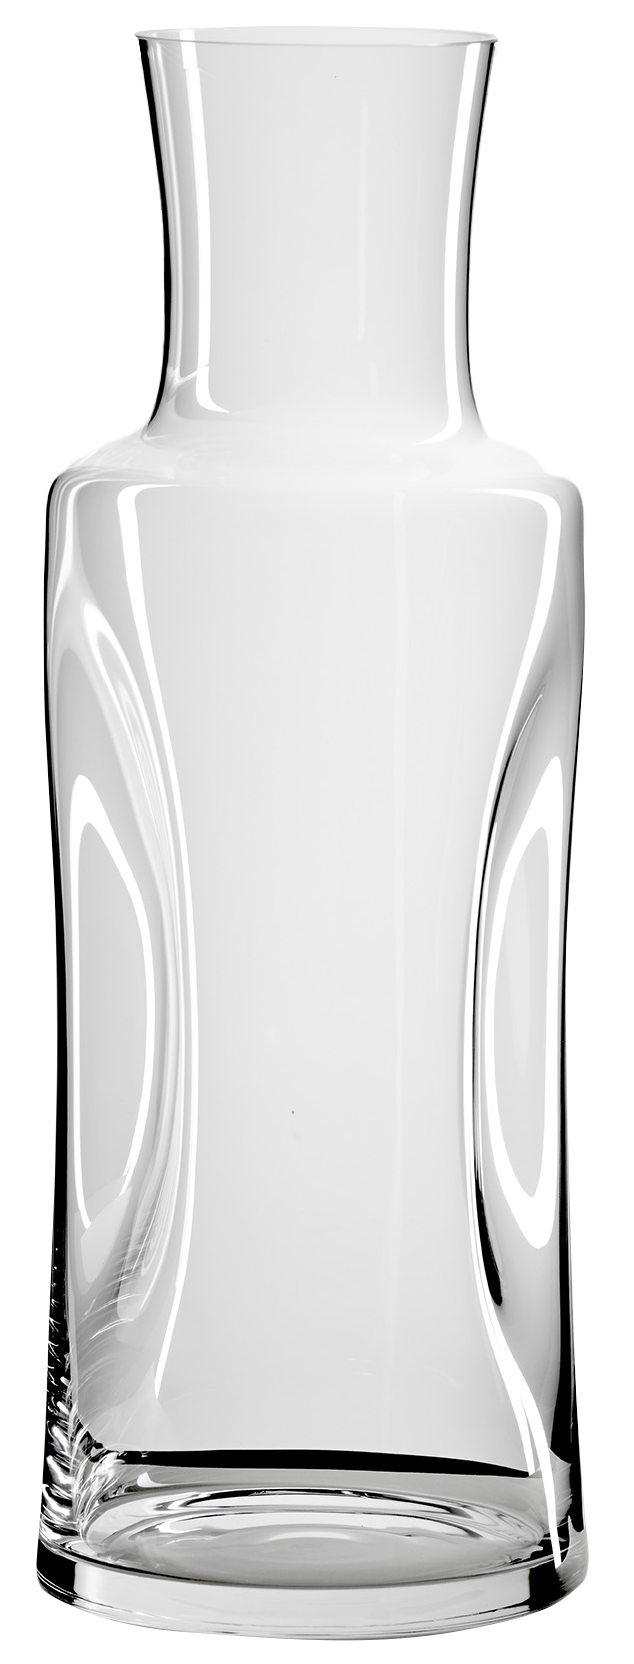 Quetschflasche 2.5 lt in transparent präsentiert im Onlineshop von KAQTU Design AG. Karaffe ist von Gabriel-Glas (Schweiz) Gmbh